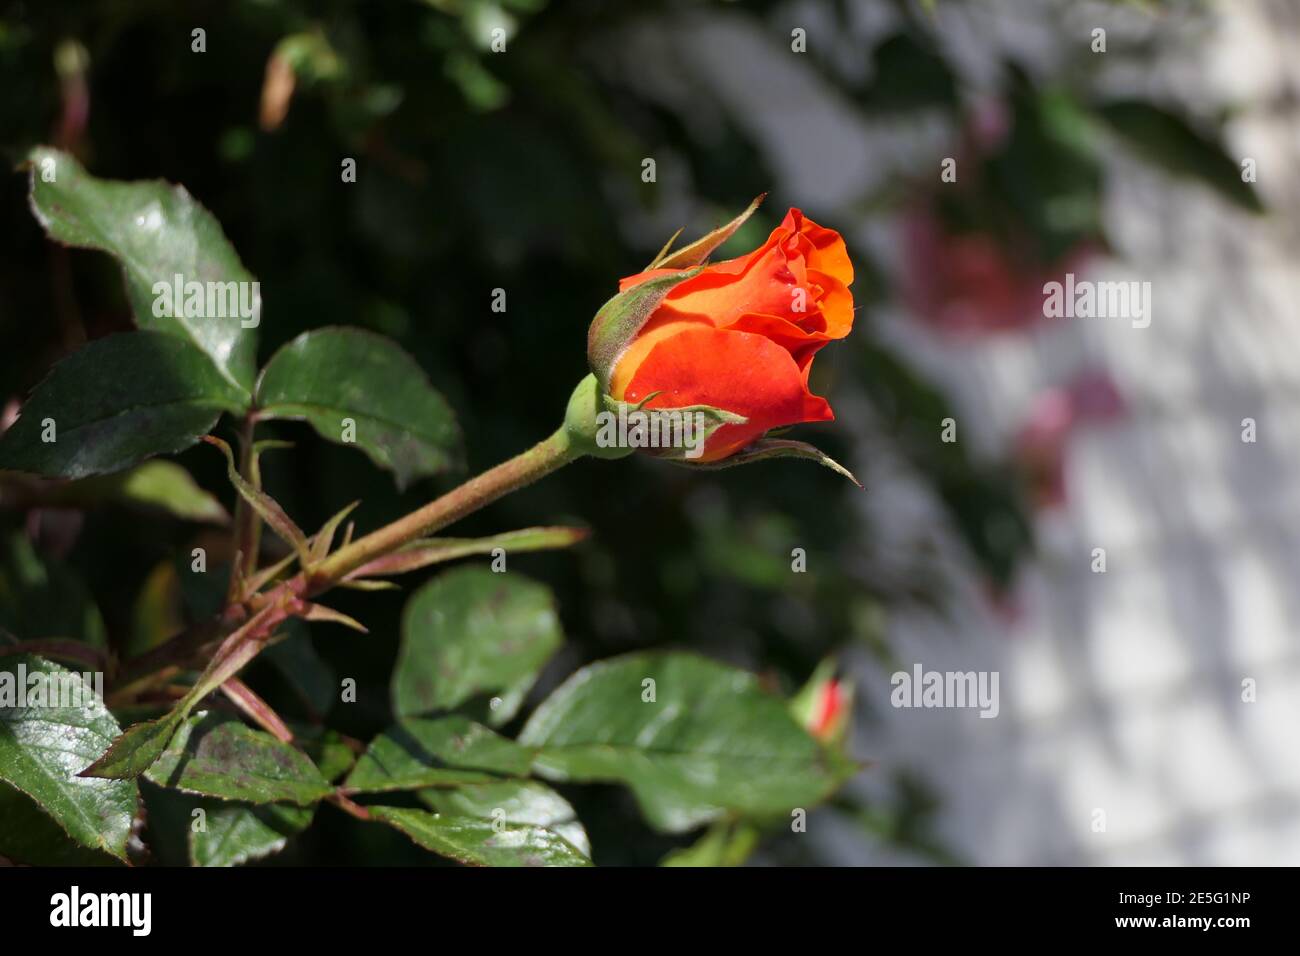 Wunderbar duftende Rose aus einem schönen Rosenbusch an einem befestigt Hauswand Stockfoto